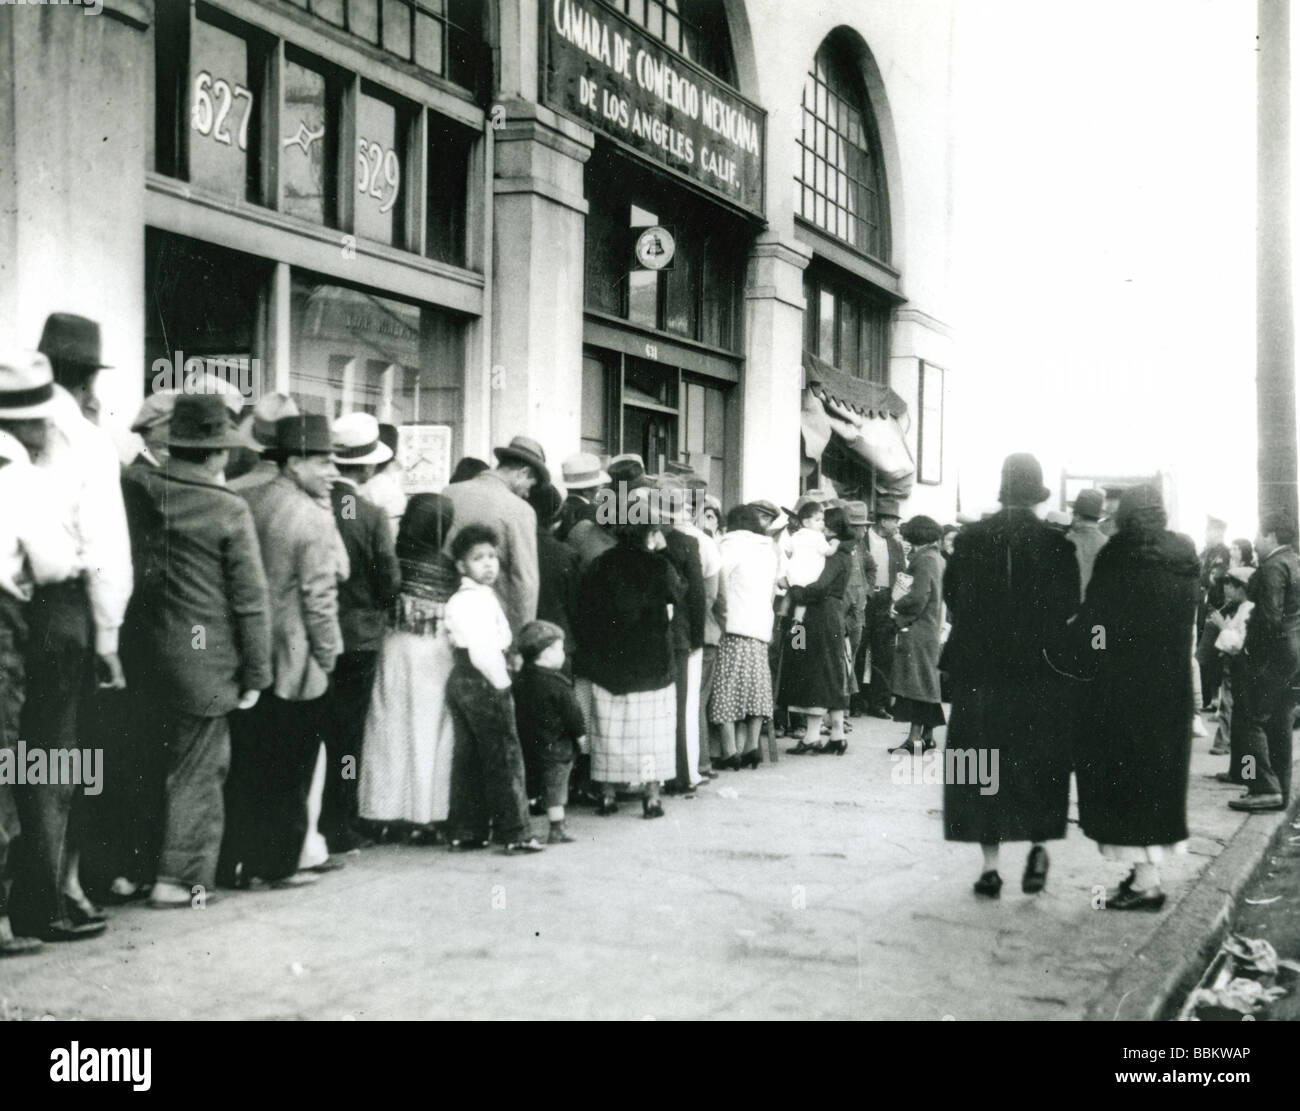 WELTWIRTSCHAFTSKRISE - Warteschlangen für Brot in Los Angeles in den 1930er Jahren Stockfoto